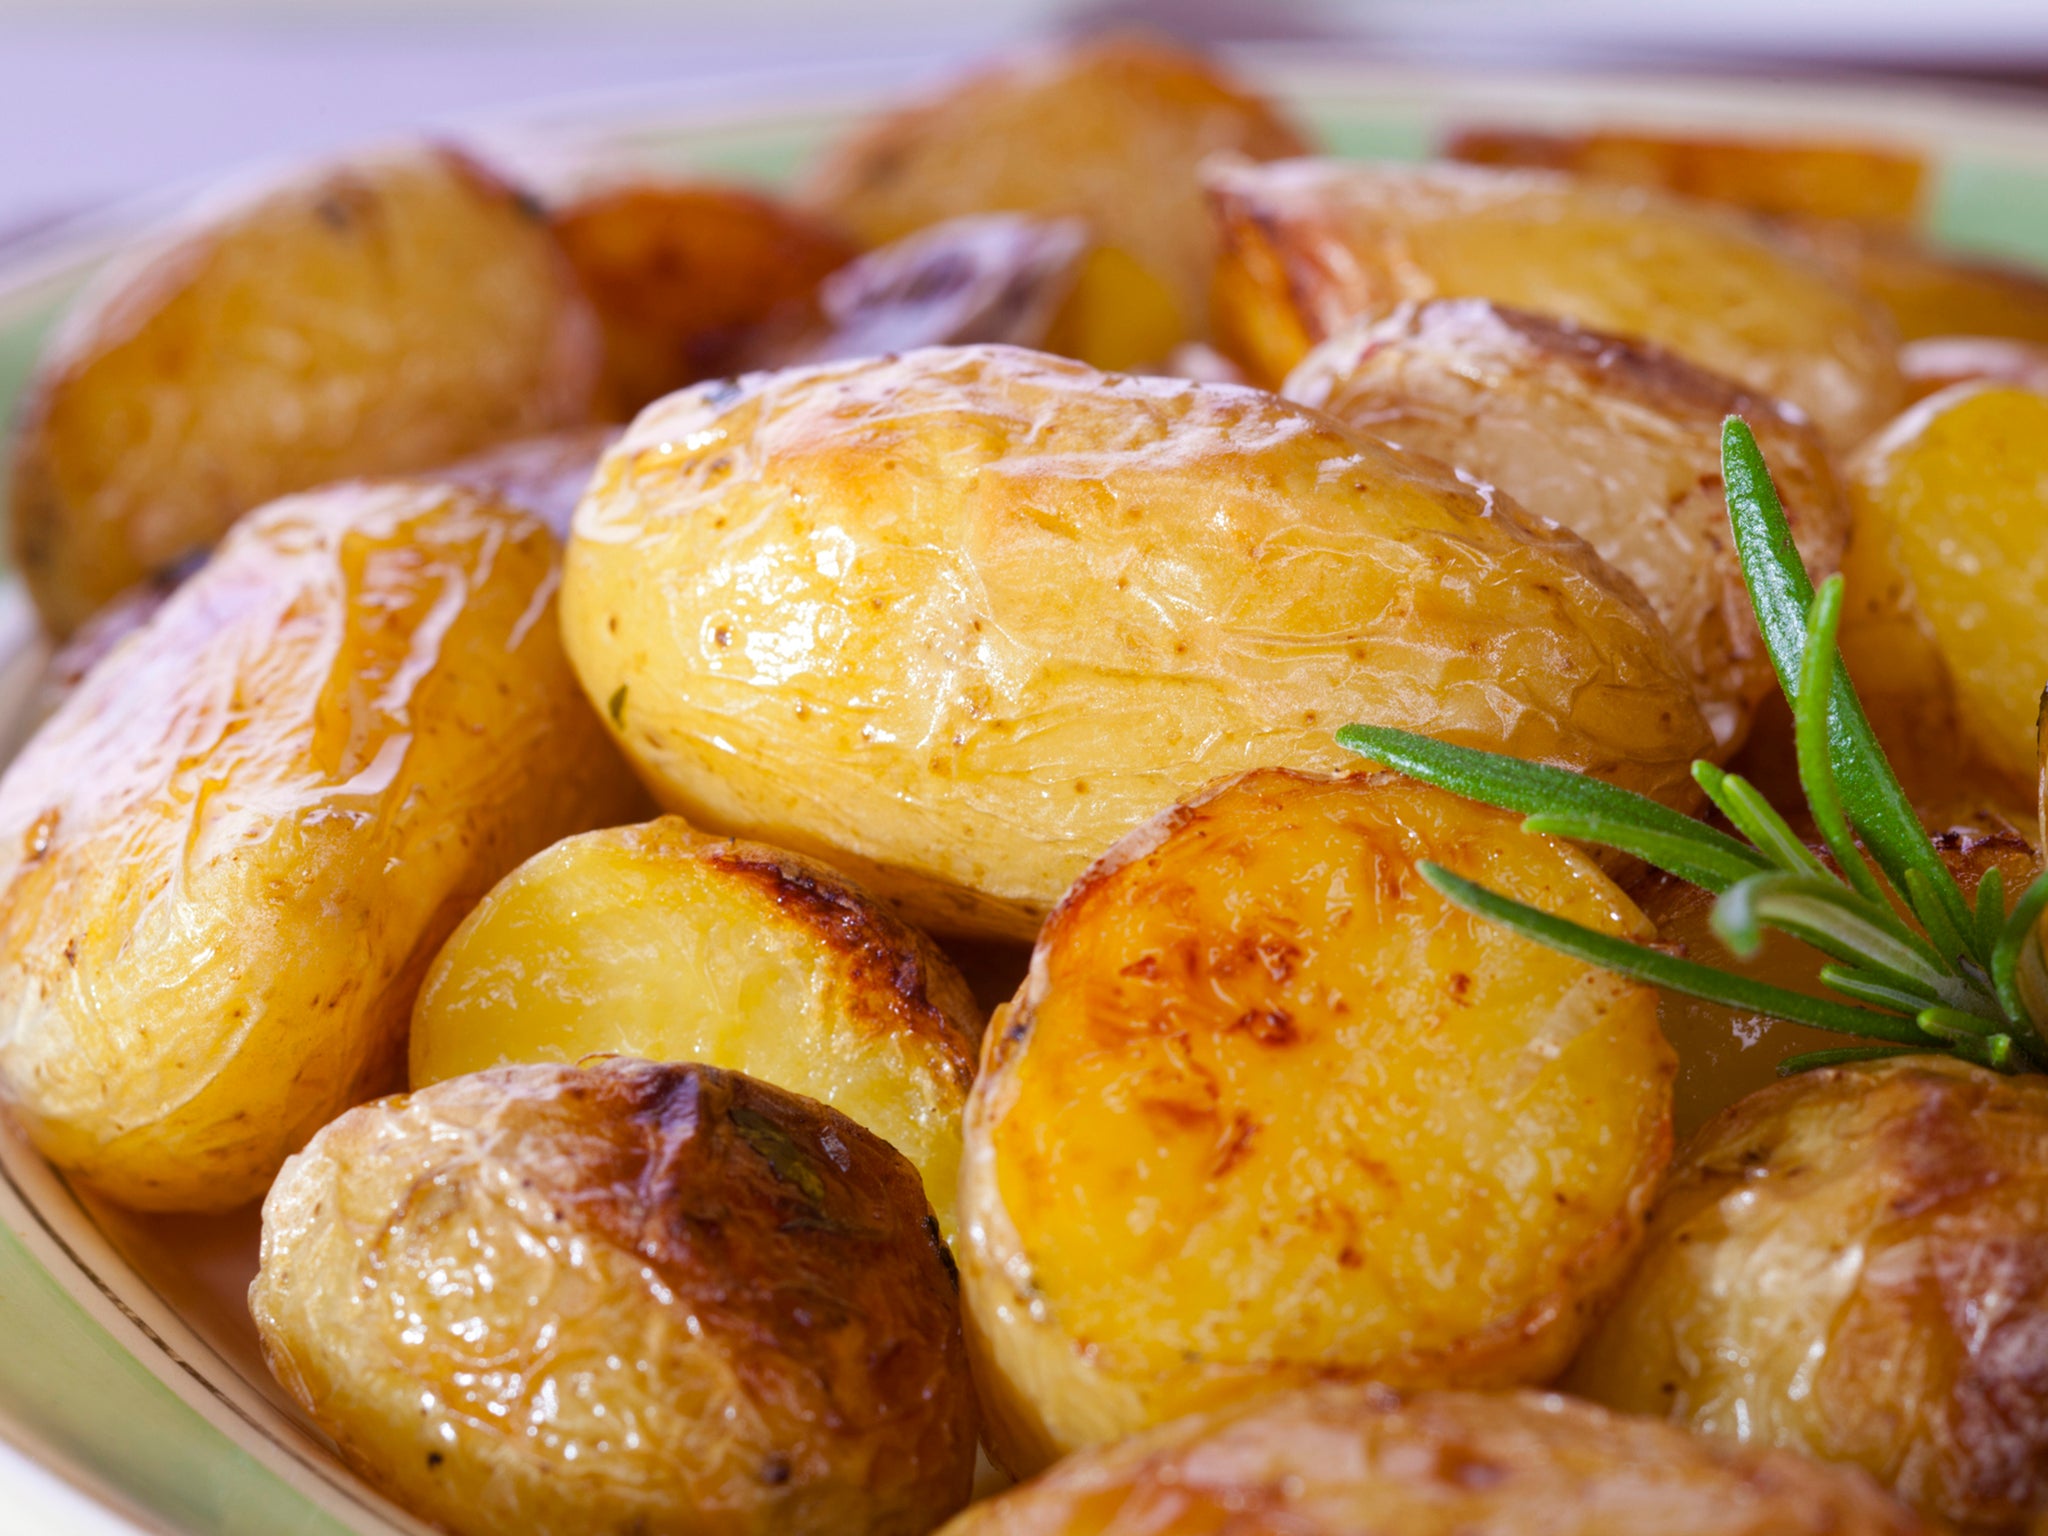 Roast new potatoes with rosemary (iStock